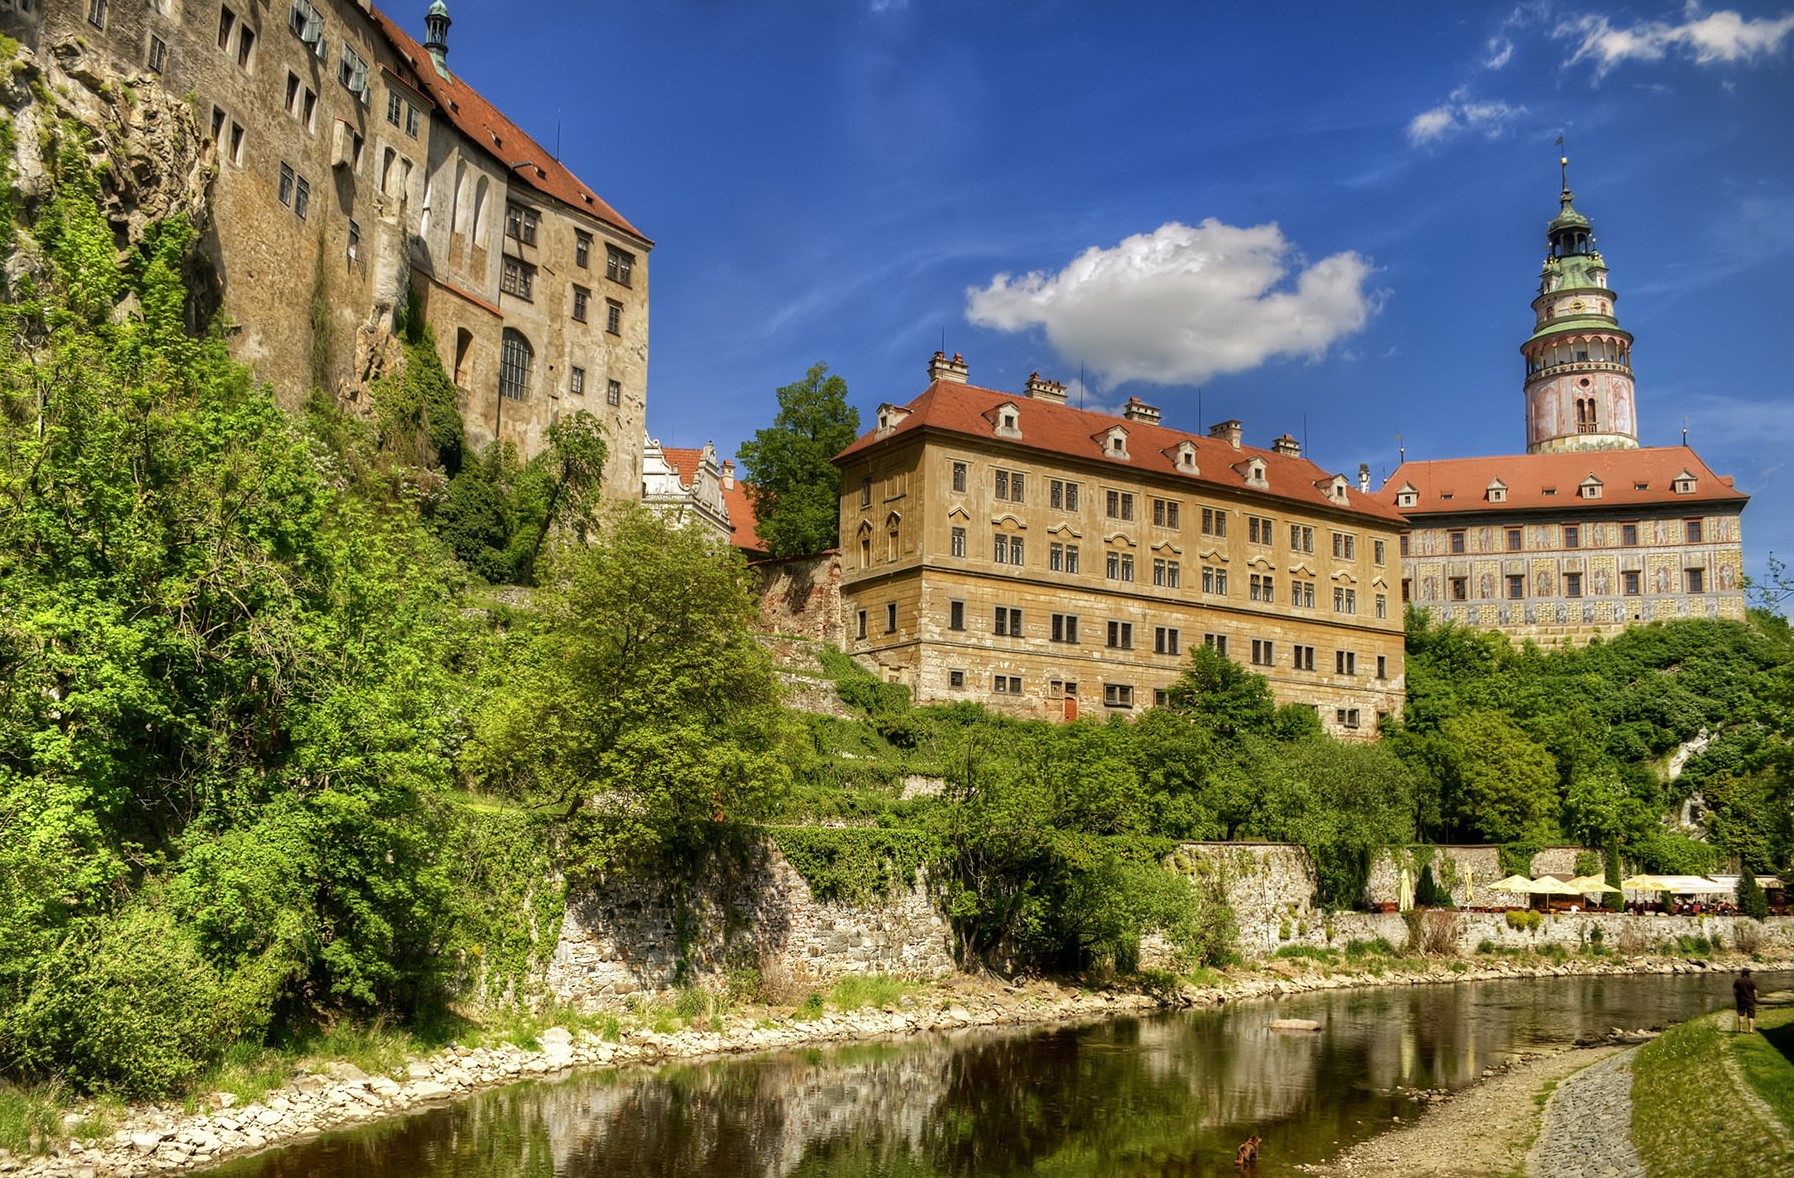 Чески Крумлов + замок Глубока-над-Влтавой в мини-группе в Праге Экскурсия цена €54, 390 отзывов